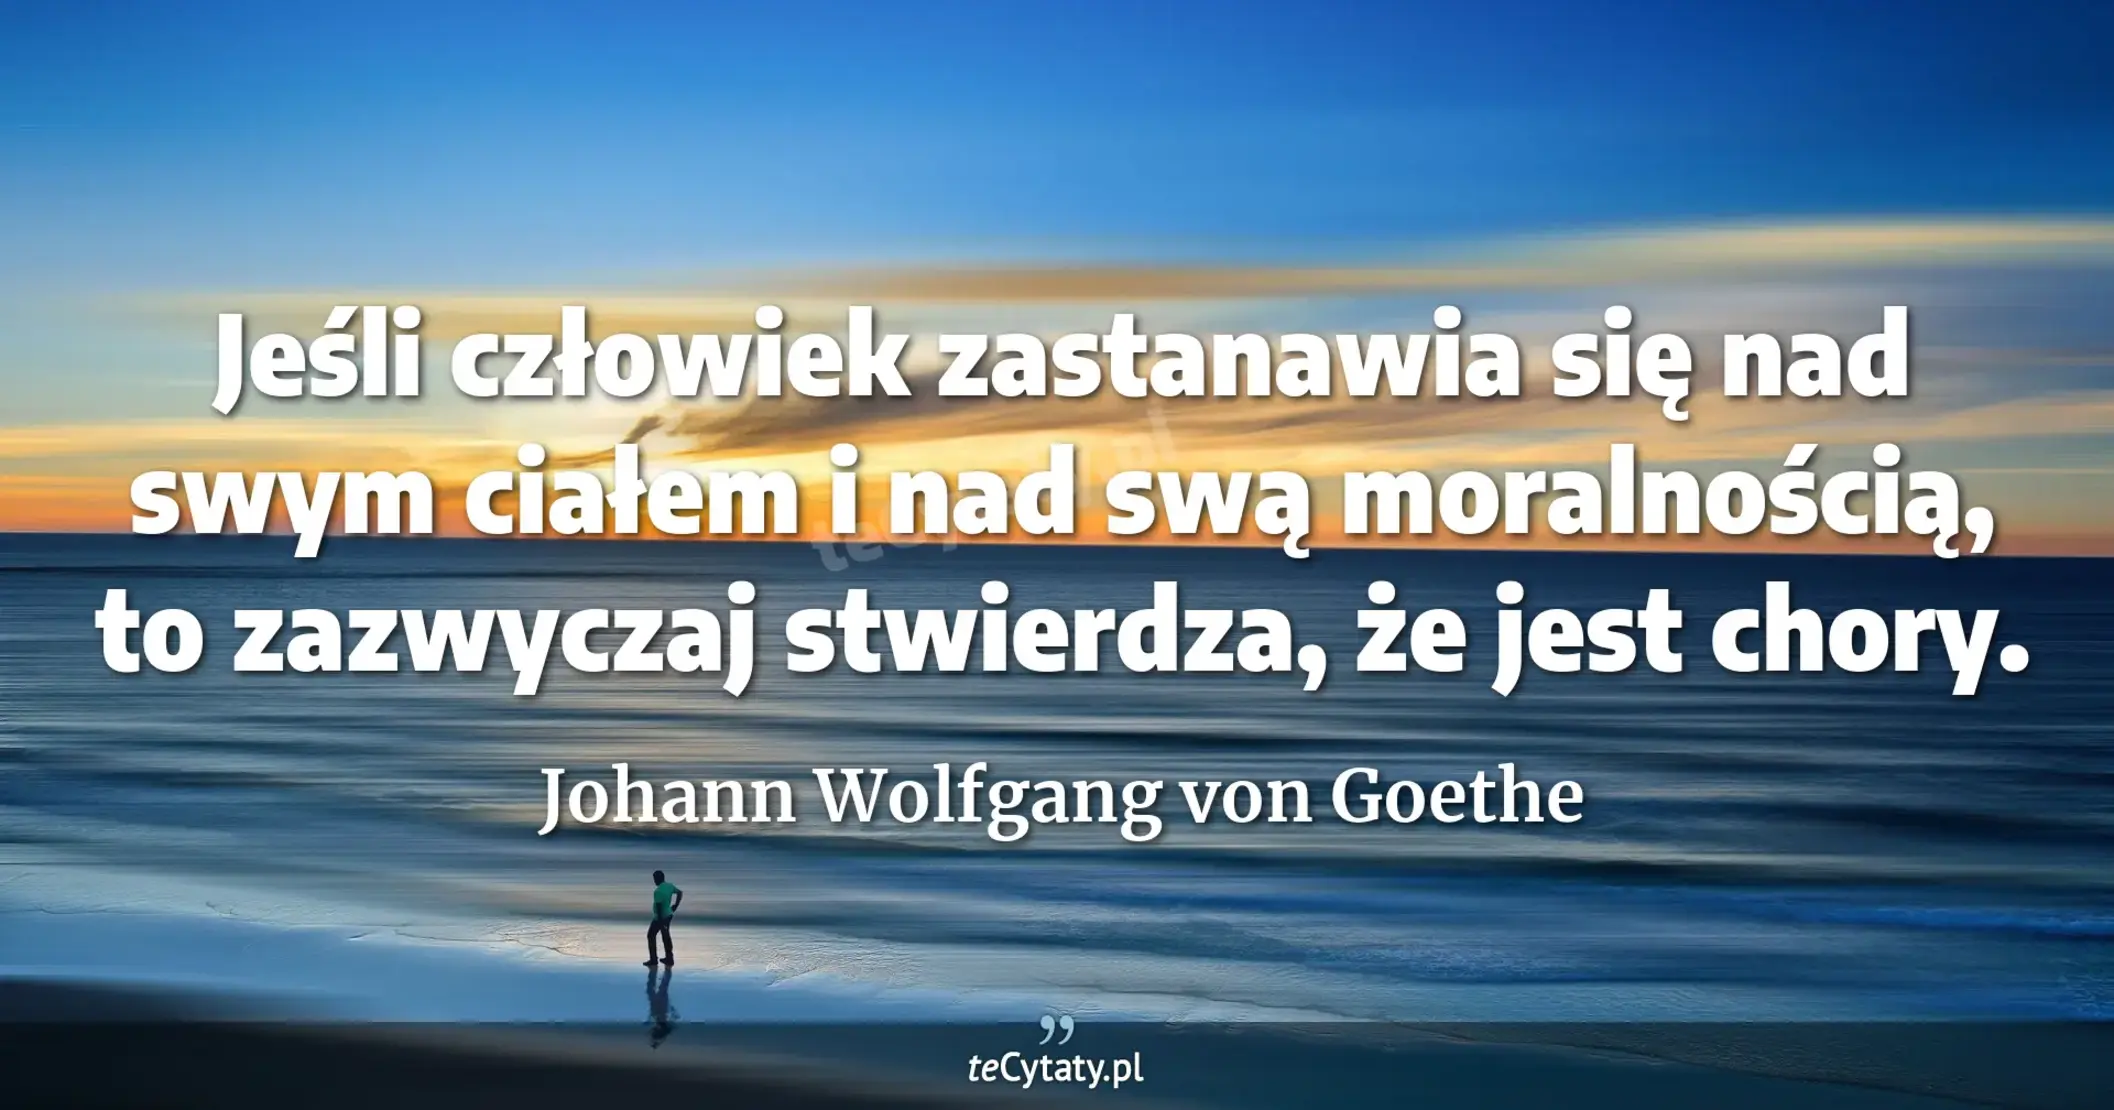 Jeśli człowiek zastanawia się nad swym ciałem i nad swą moralnością, to zazwyczaj stwierdza, że jest chory. - Johann Wolfgang von Goethe